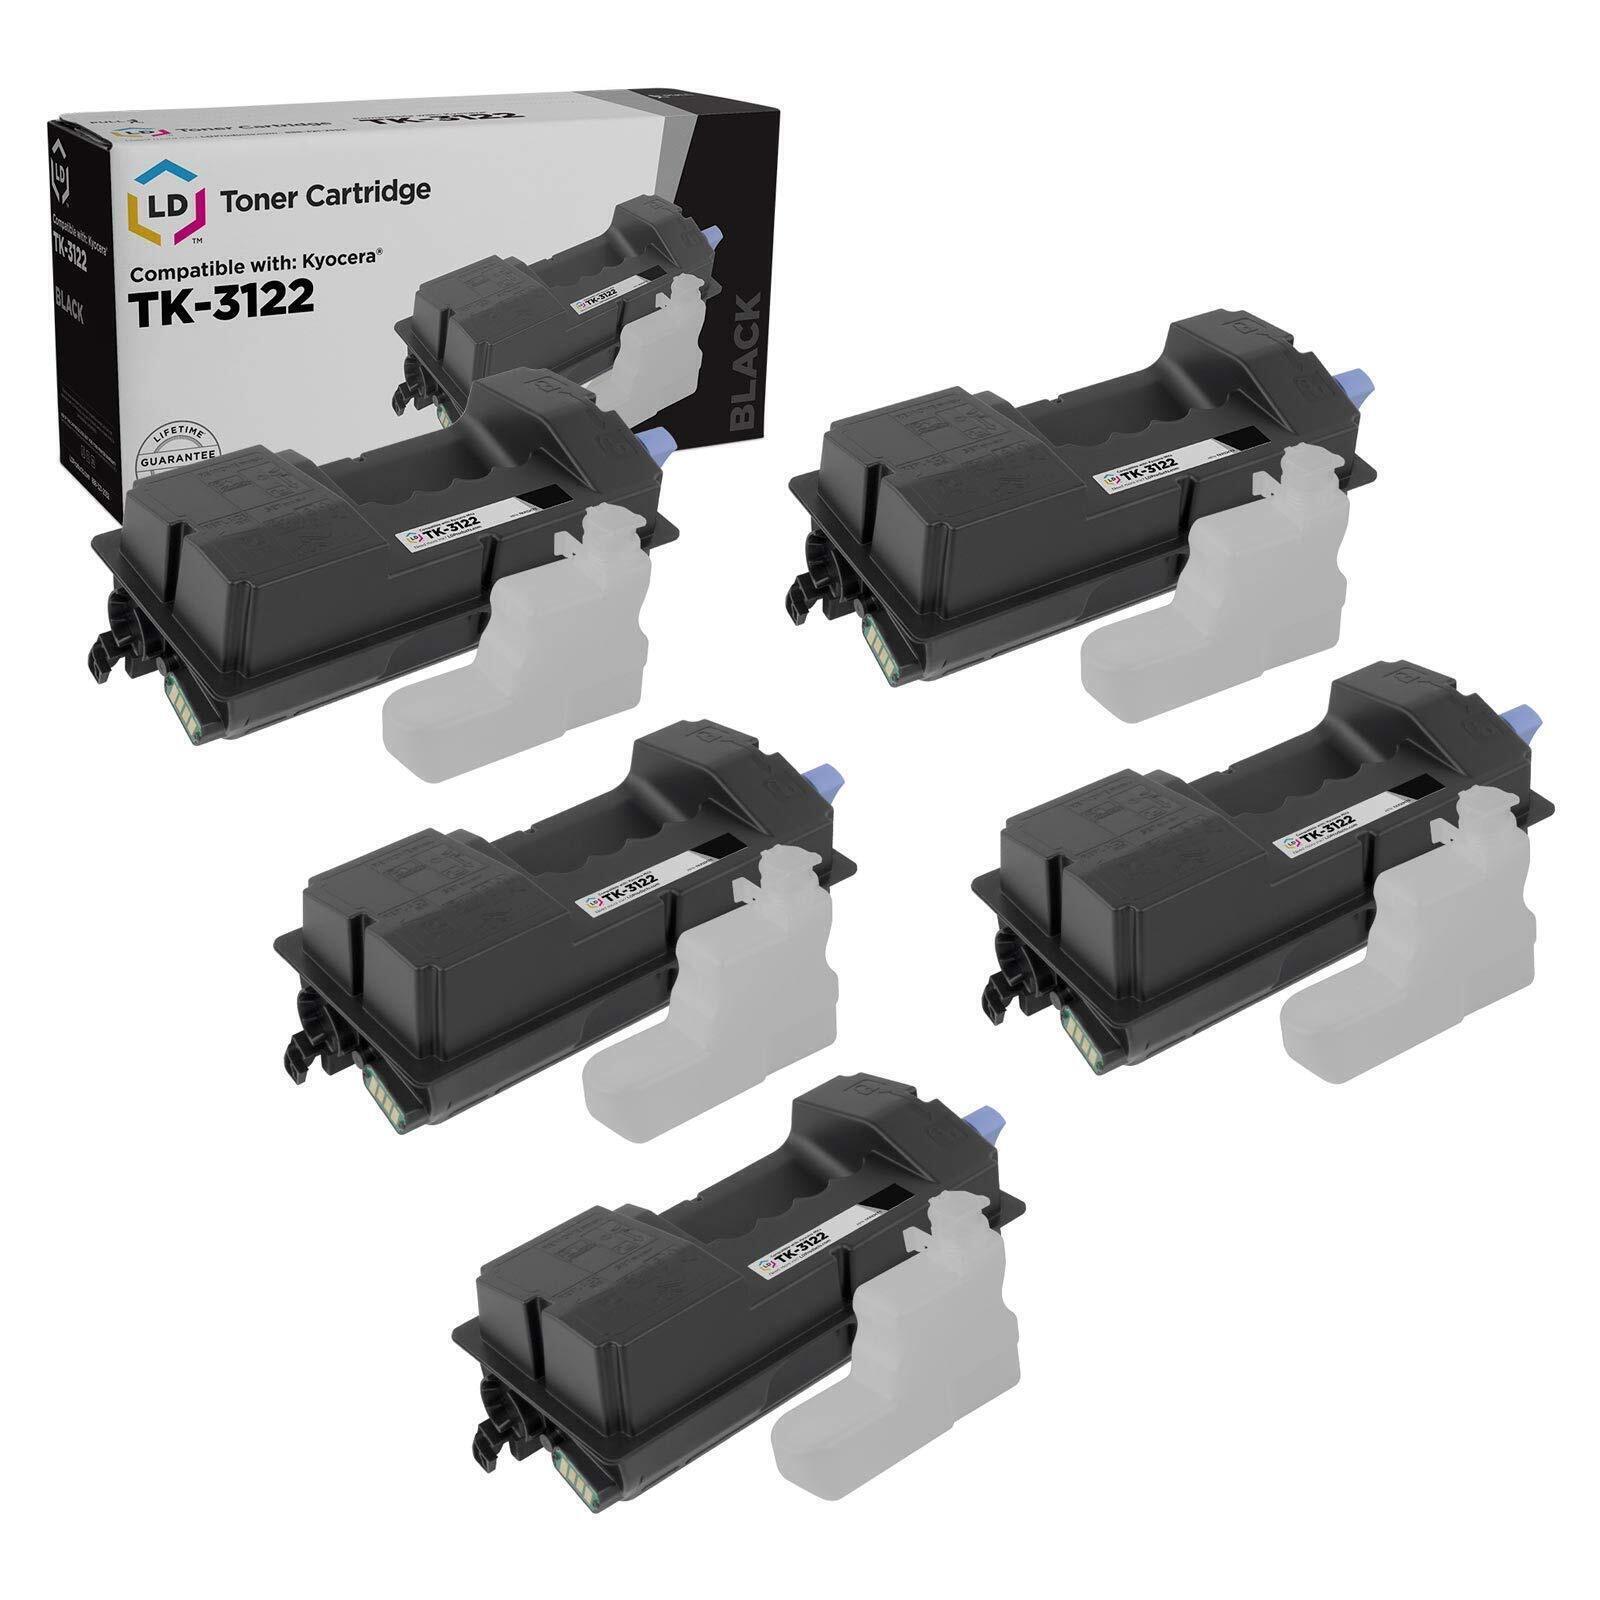 LD Set of 5 Comp Kyocera-Mita Black TK-3122 / 1T02L10US0 Toner FS-4200DN